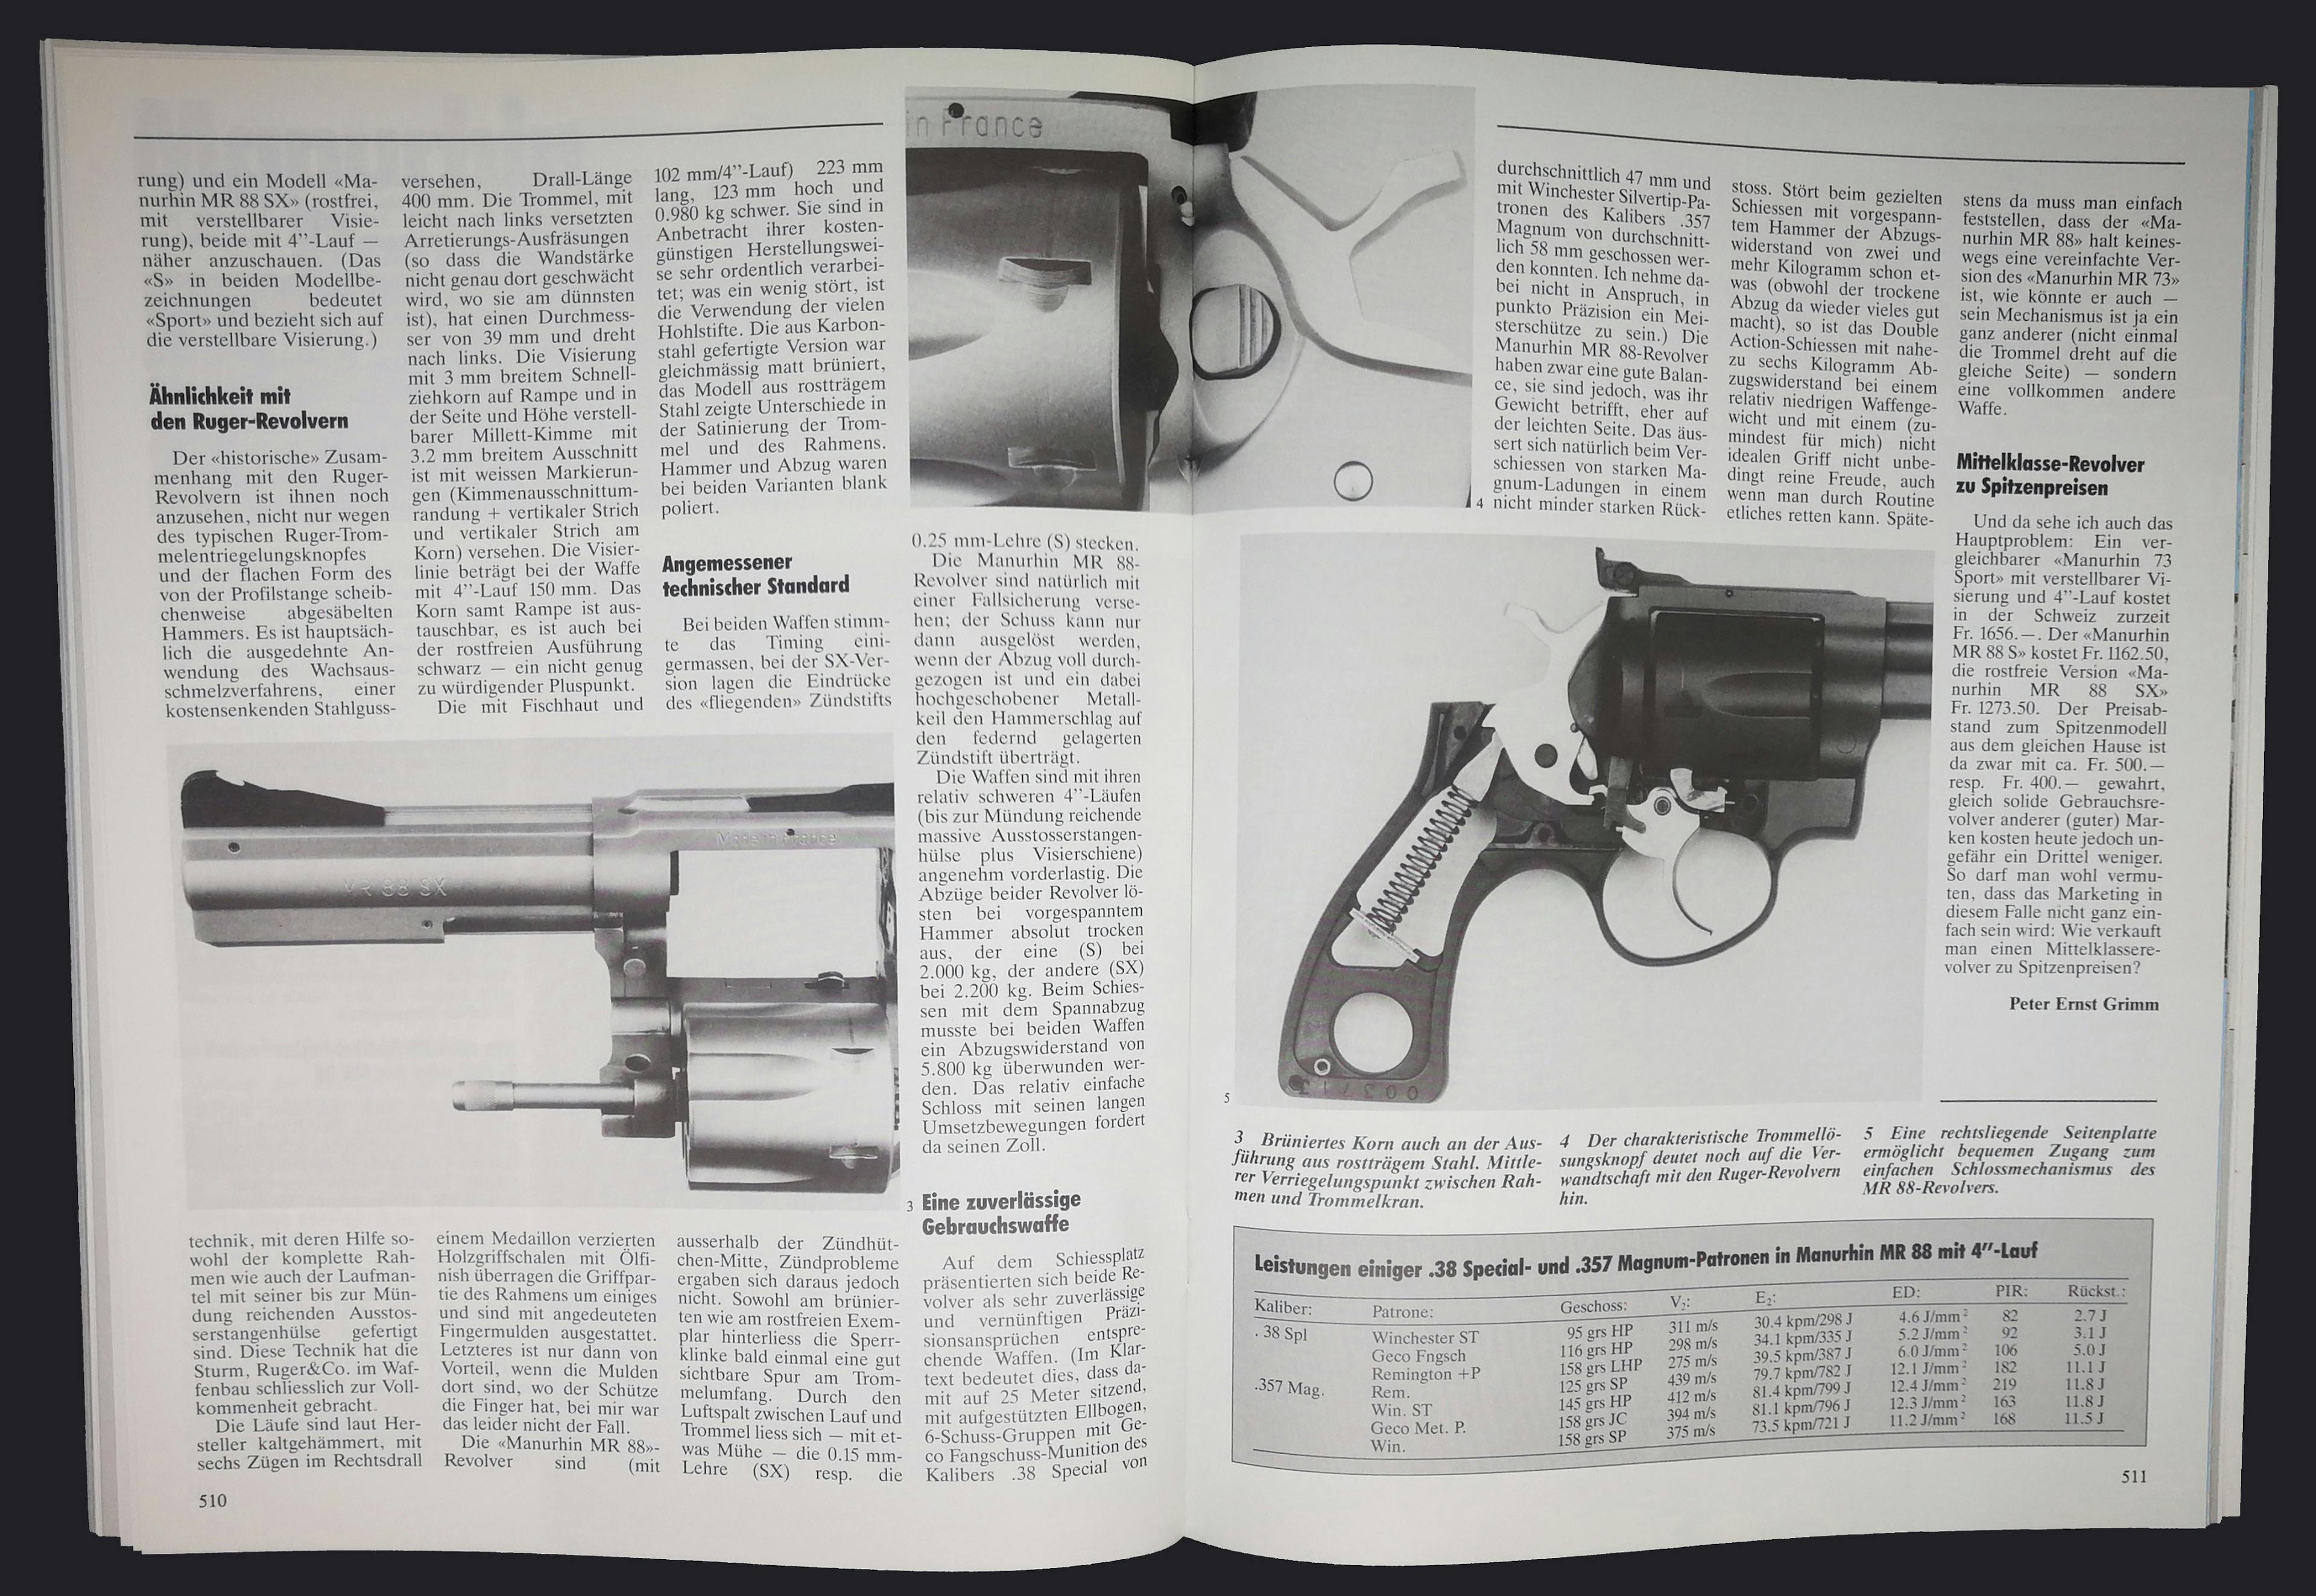 Das hier ist ein Manurhin MR 88 Revolver. "mittelklasse-Revolver zu Spitzenpreisen".
